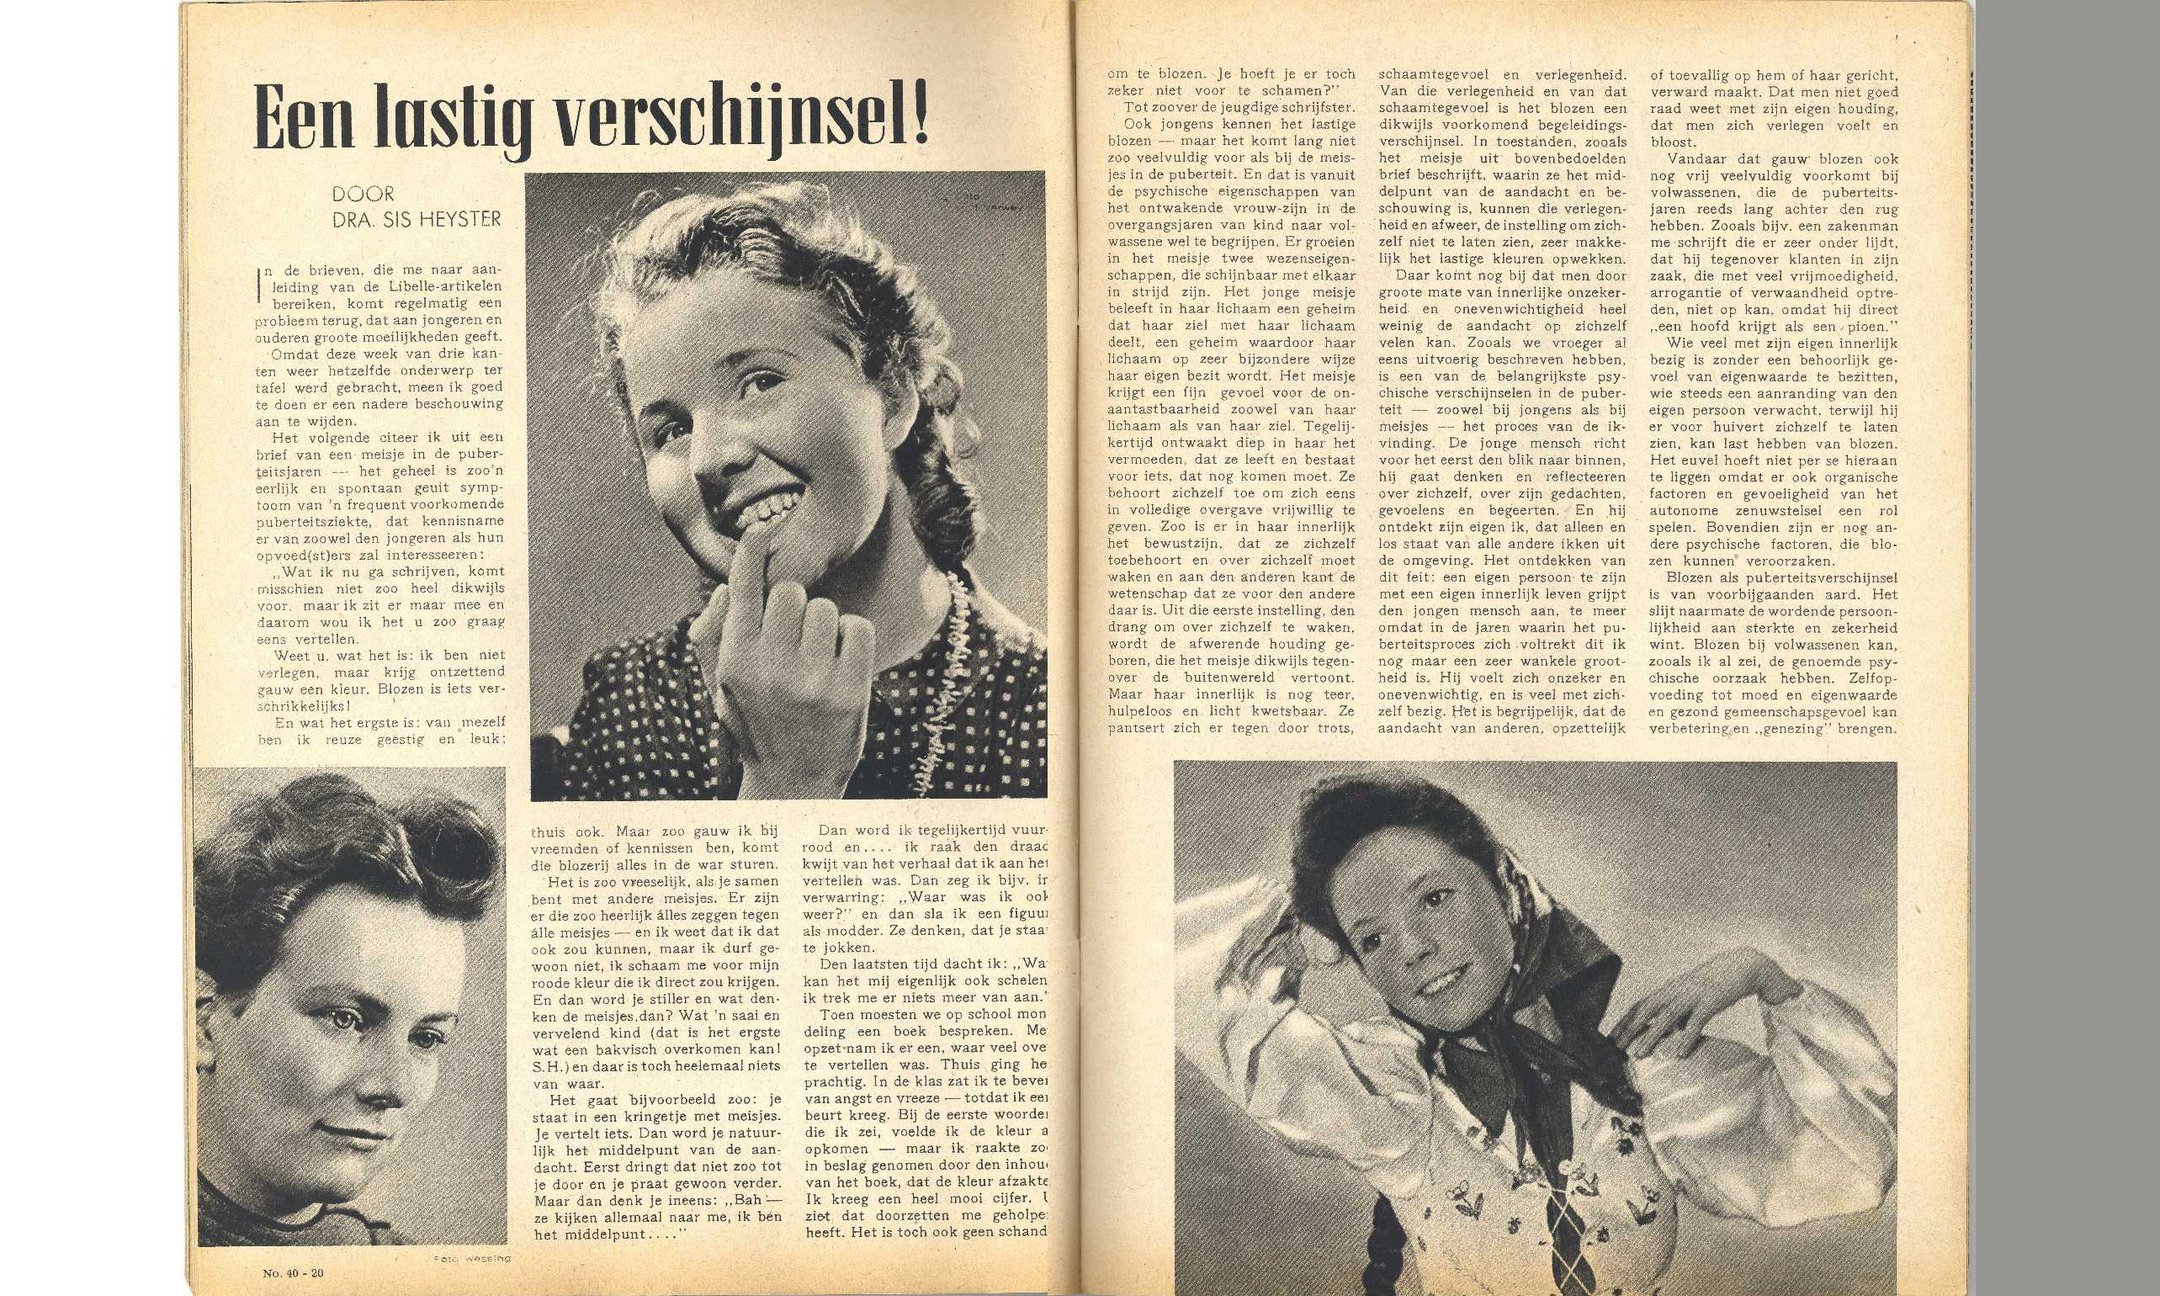 Artikel van mevrouw Sis Heyster in Libelle. De rechterafbeelding heeft Anne Frank op de wand van haar kamer in het Achterhuis geplakt.